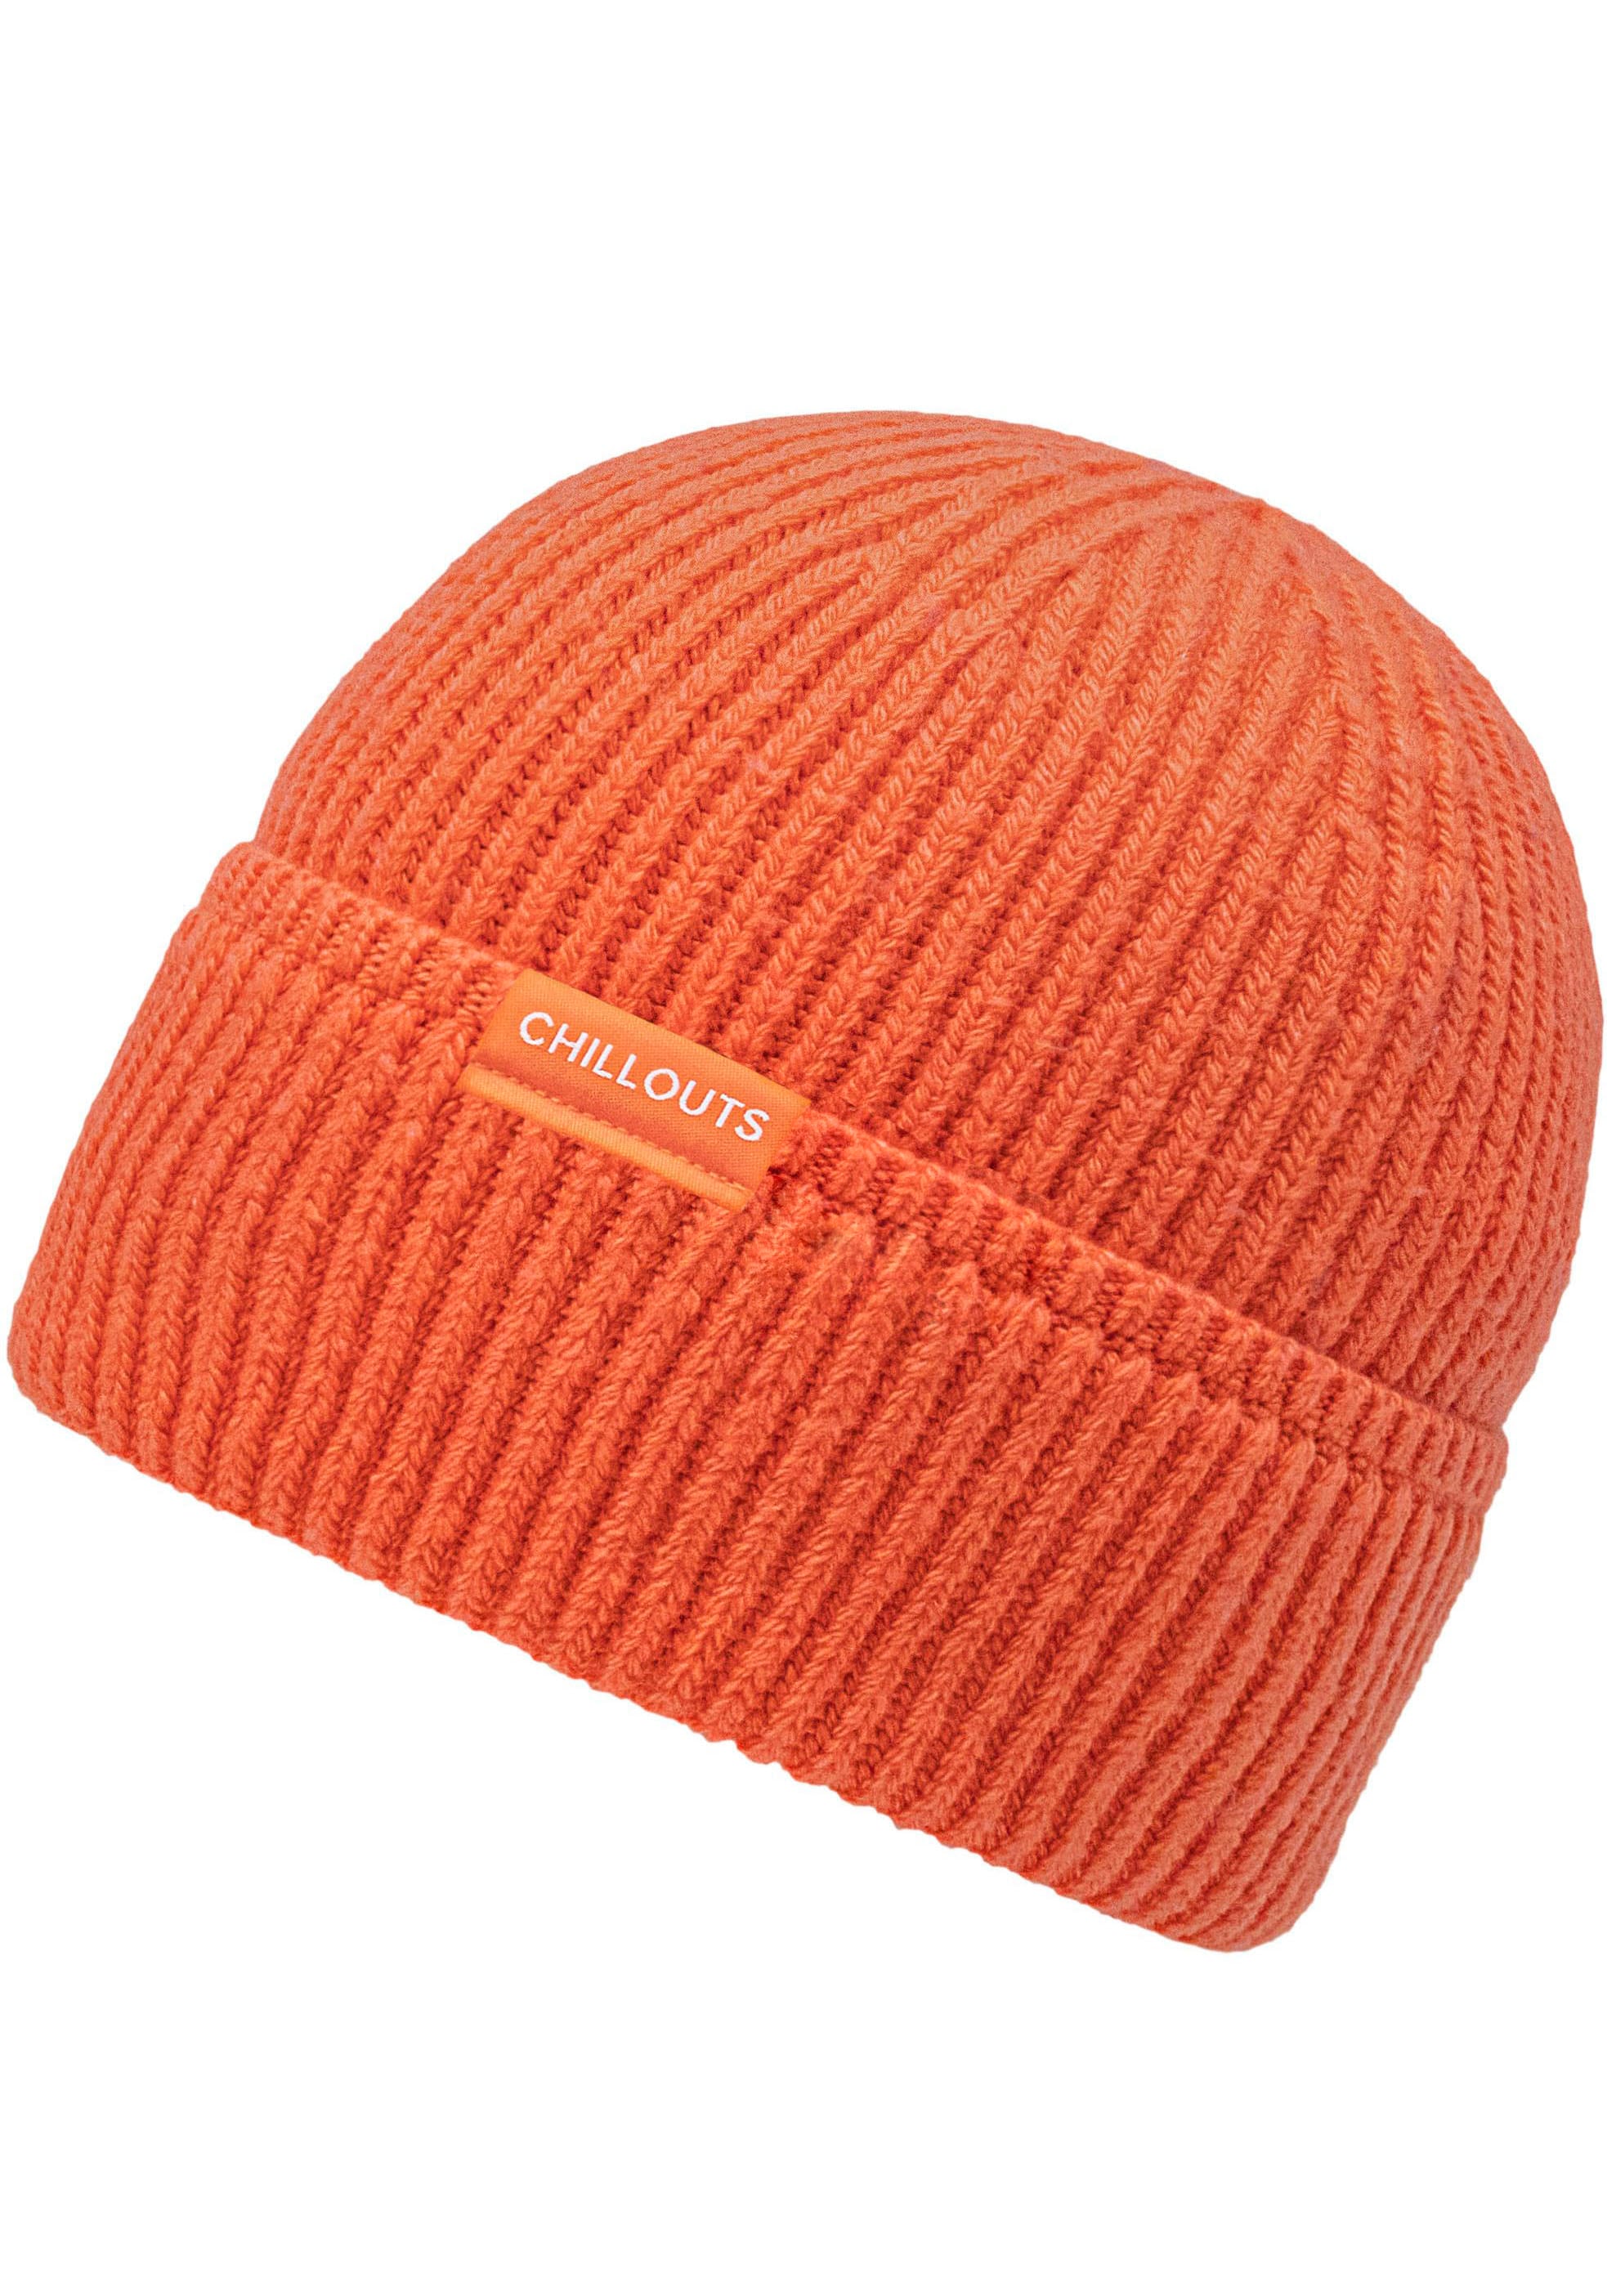 chillouts Strickmütze »Matty Hat«, online OTTO Mit shoppen bei hohem Baumwoll-Anteil